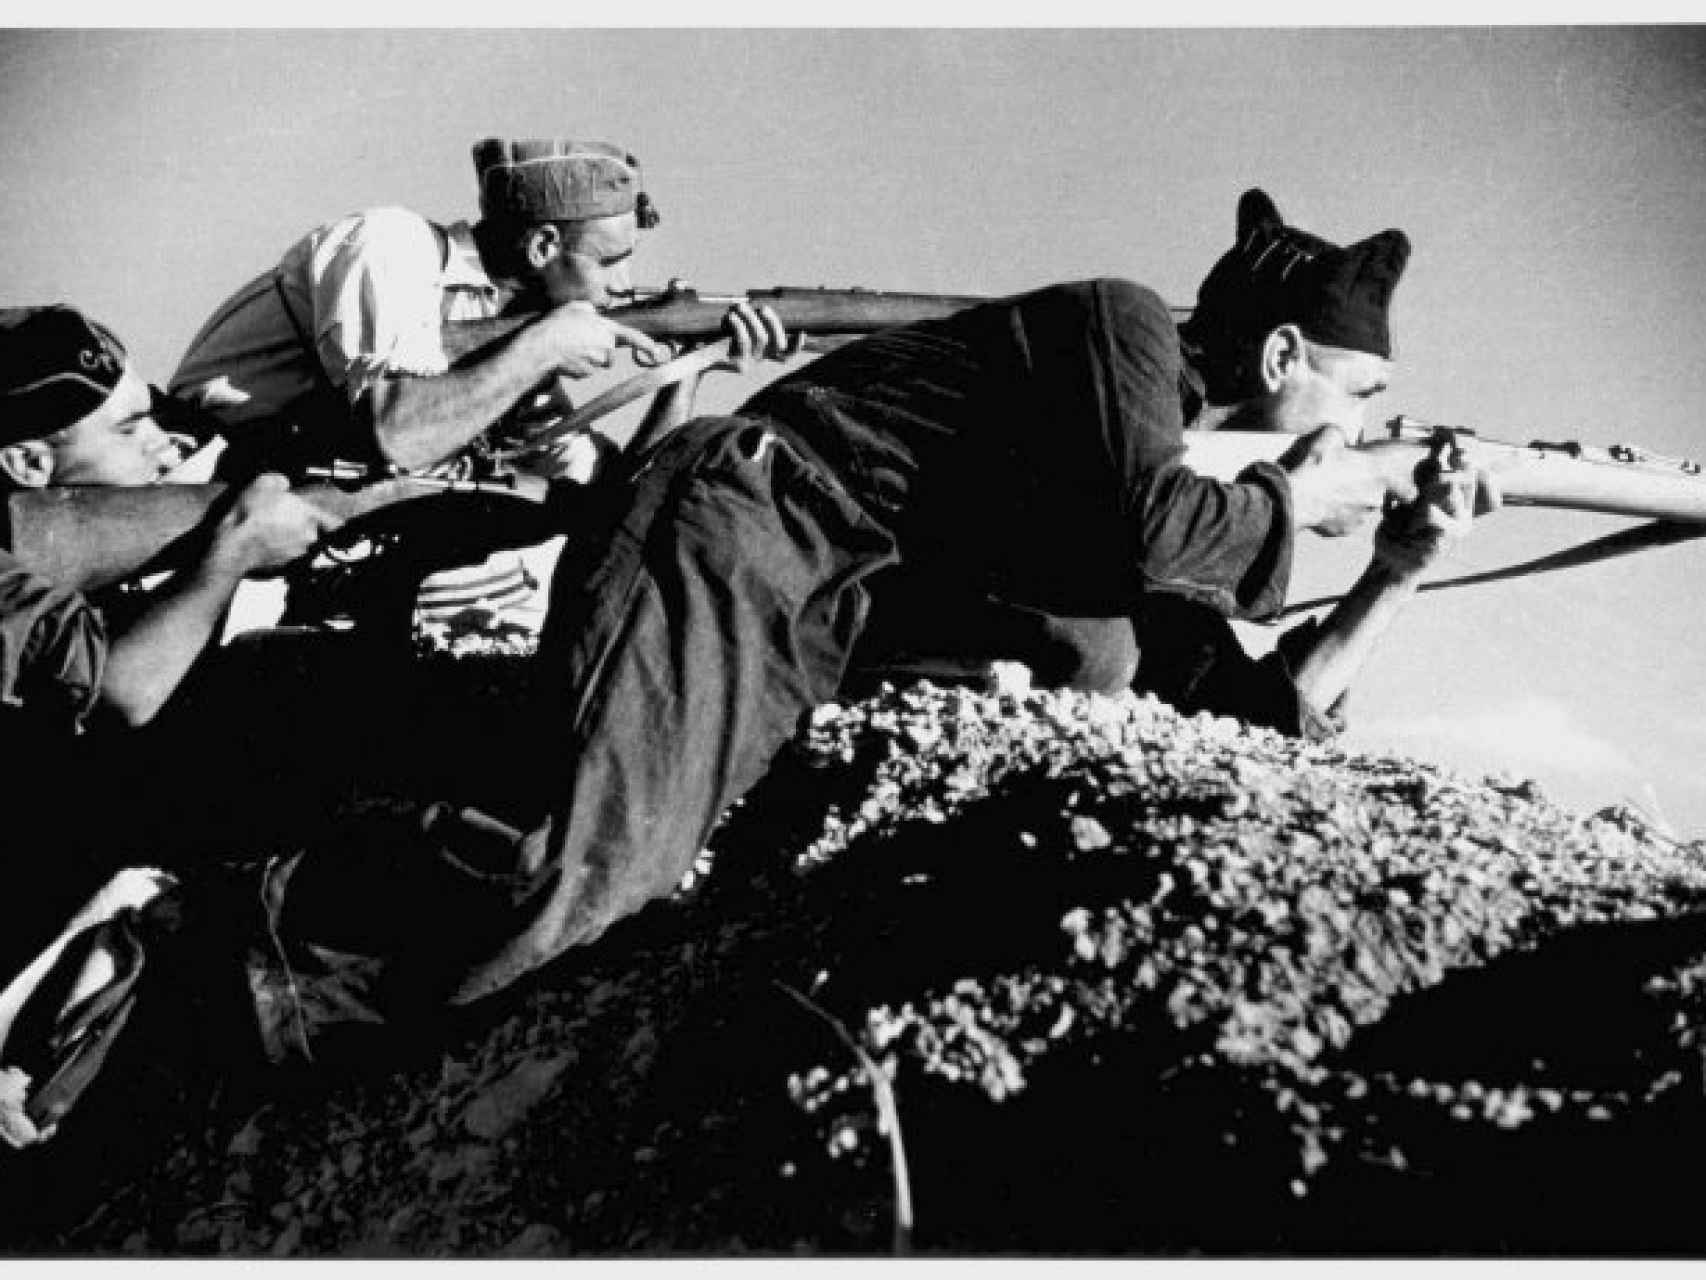 Milicianos republicanos en Cerro Muriano retratados por Robert Capa.